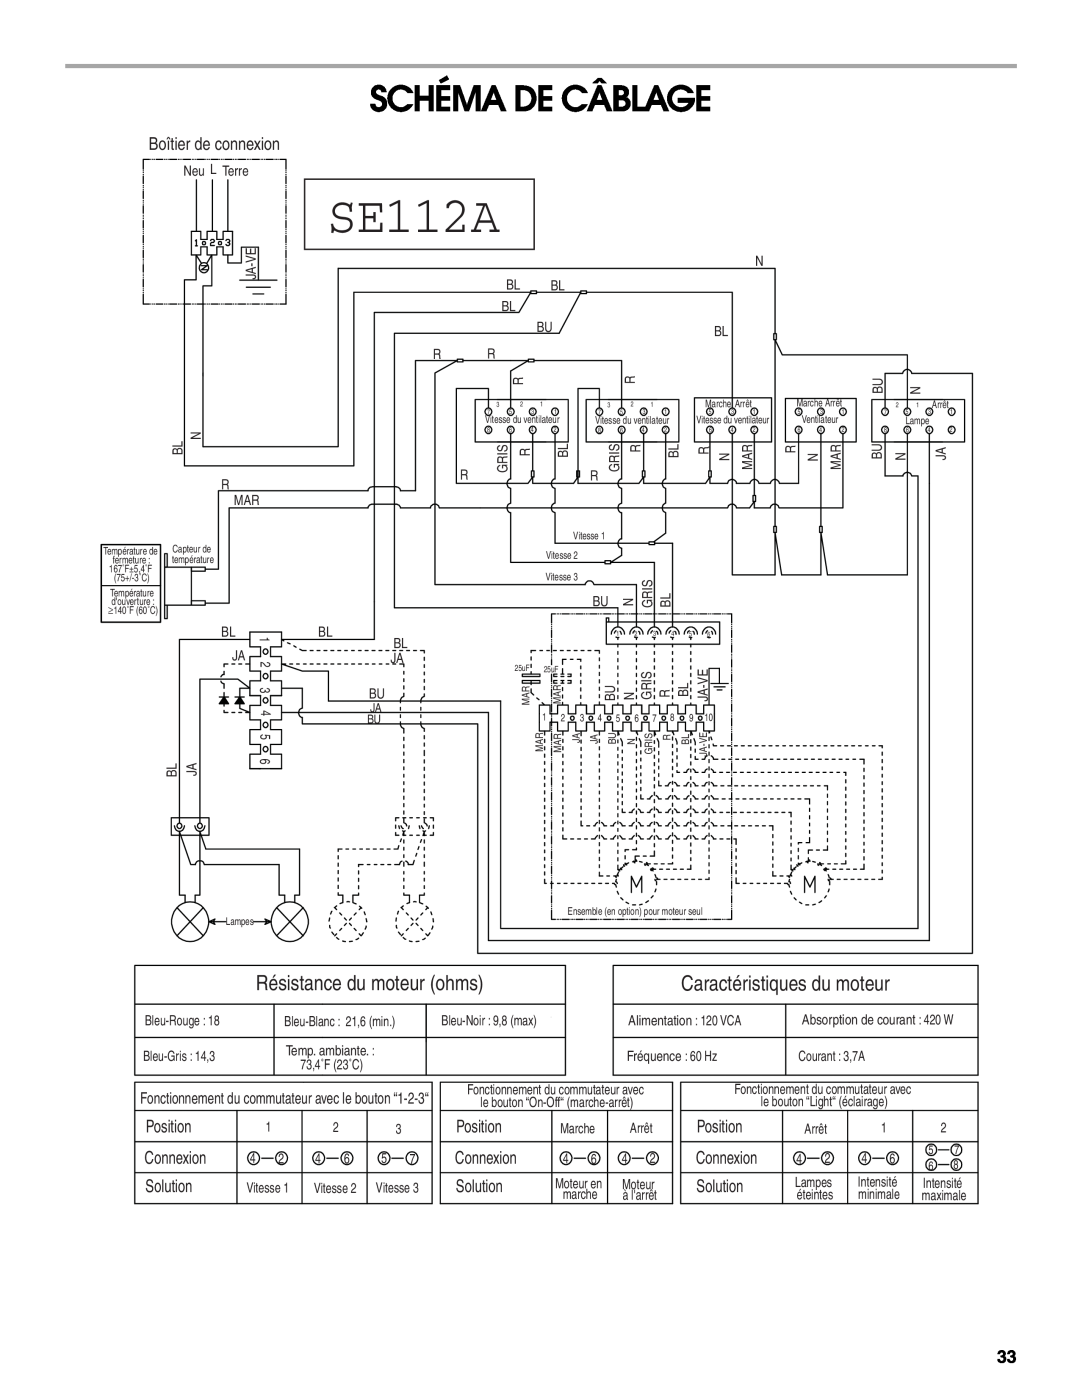 Whirlpool 36, 48 installation instructions Schéma De Câblage, Résistance du moteur ohms, Caractéristiques du moteur, SE112A 